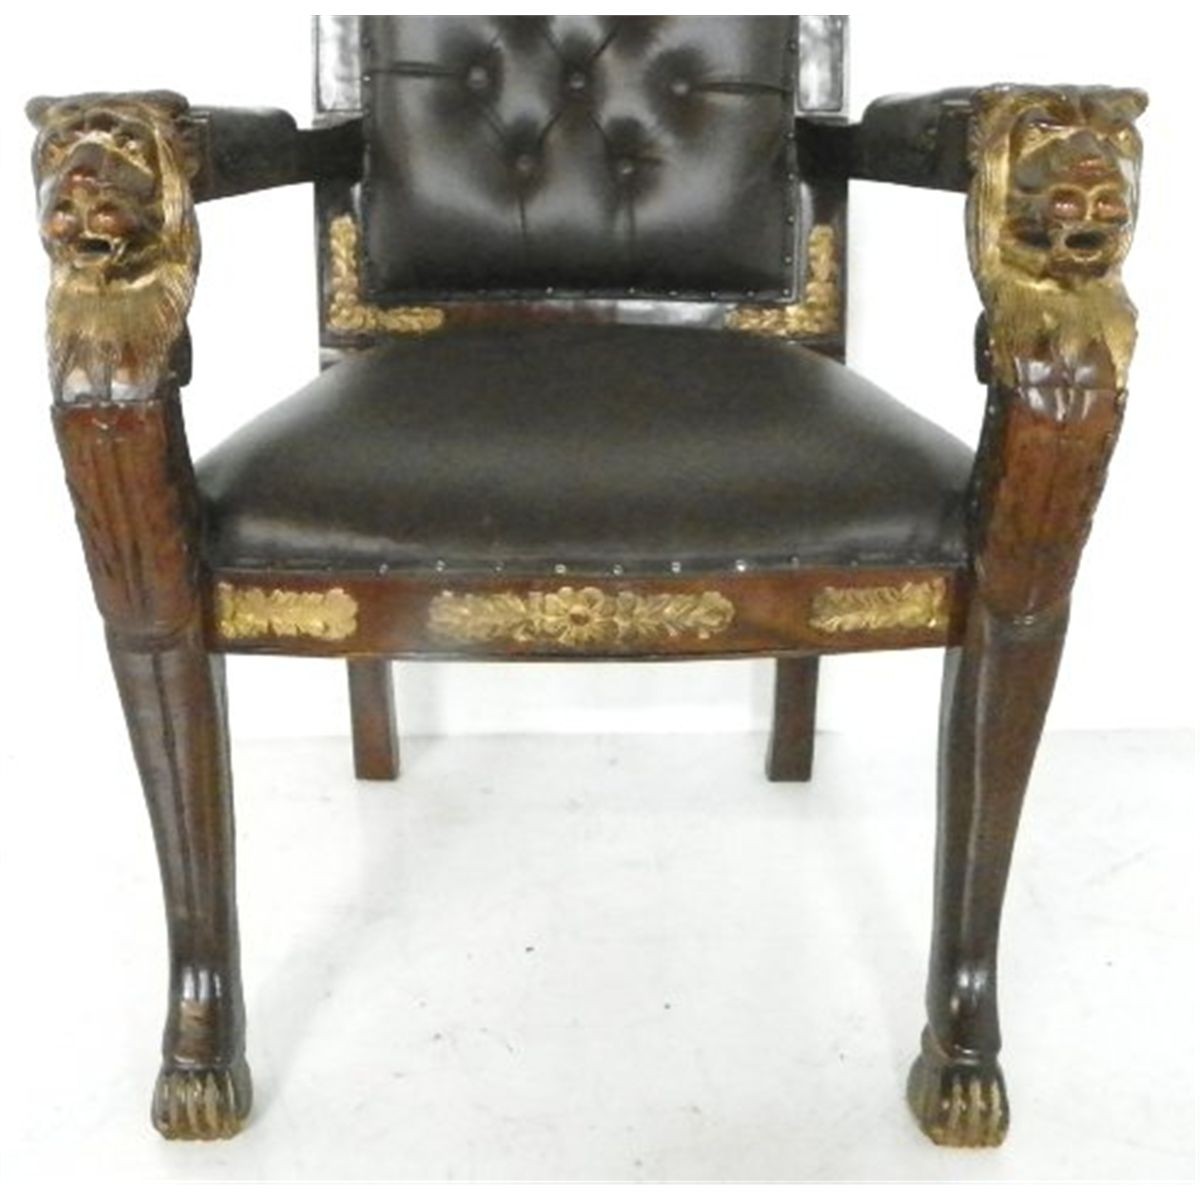 Lion head arm chair